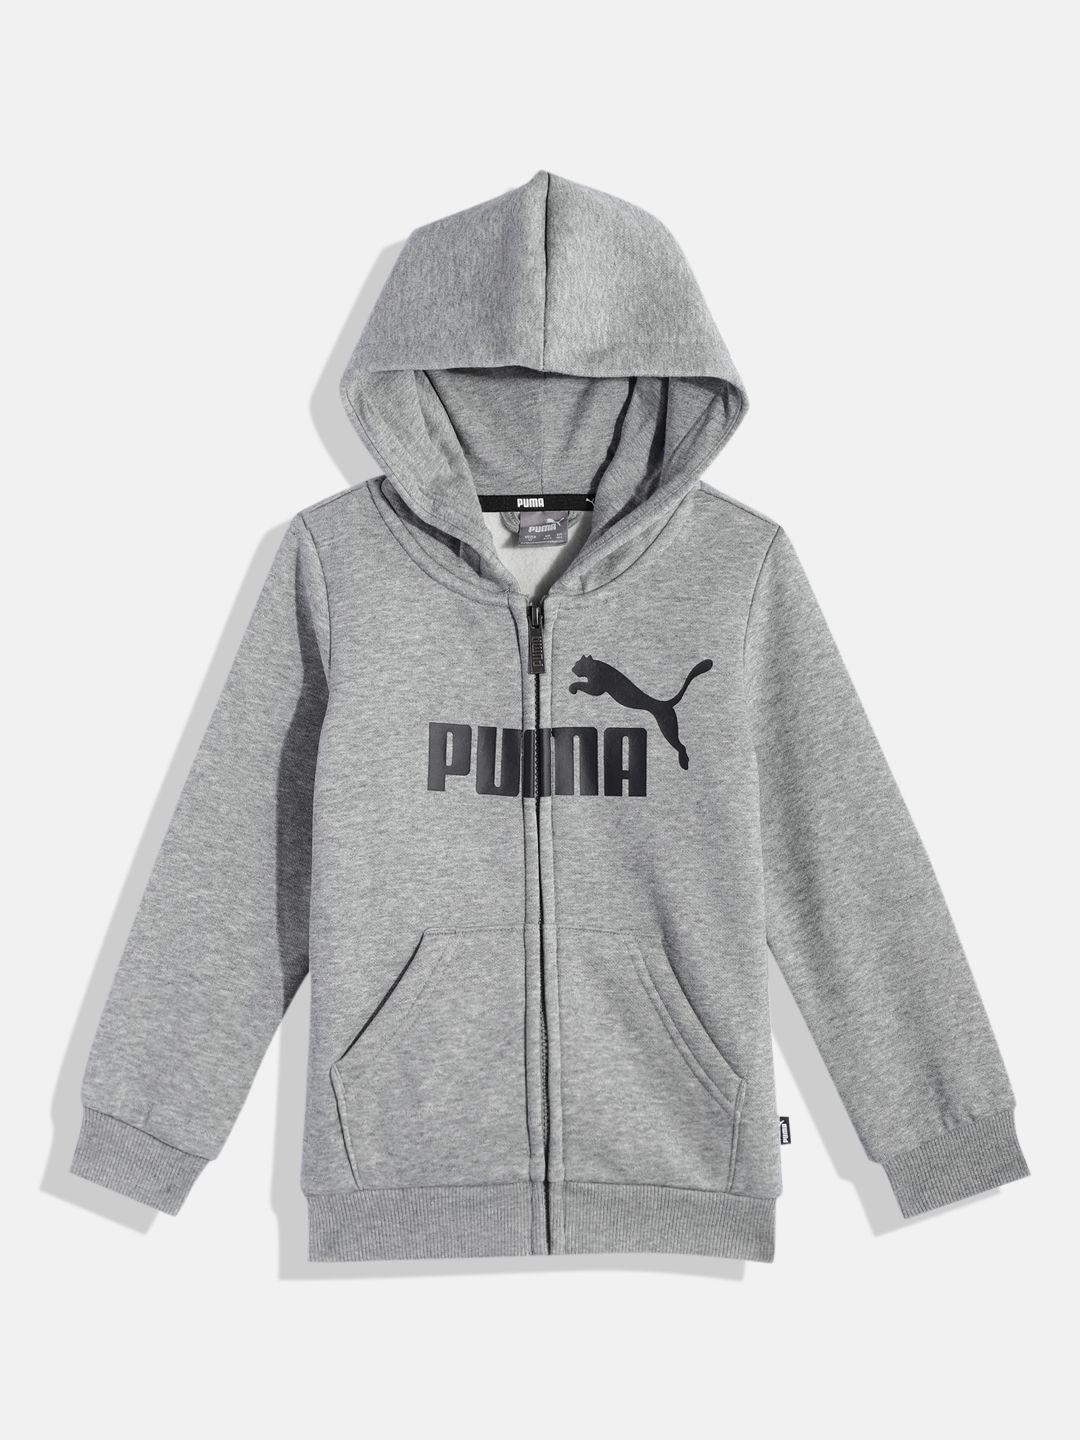 puma boys brand logo printed hooded sweatshirt